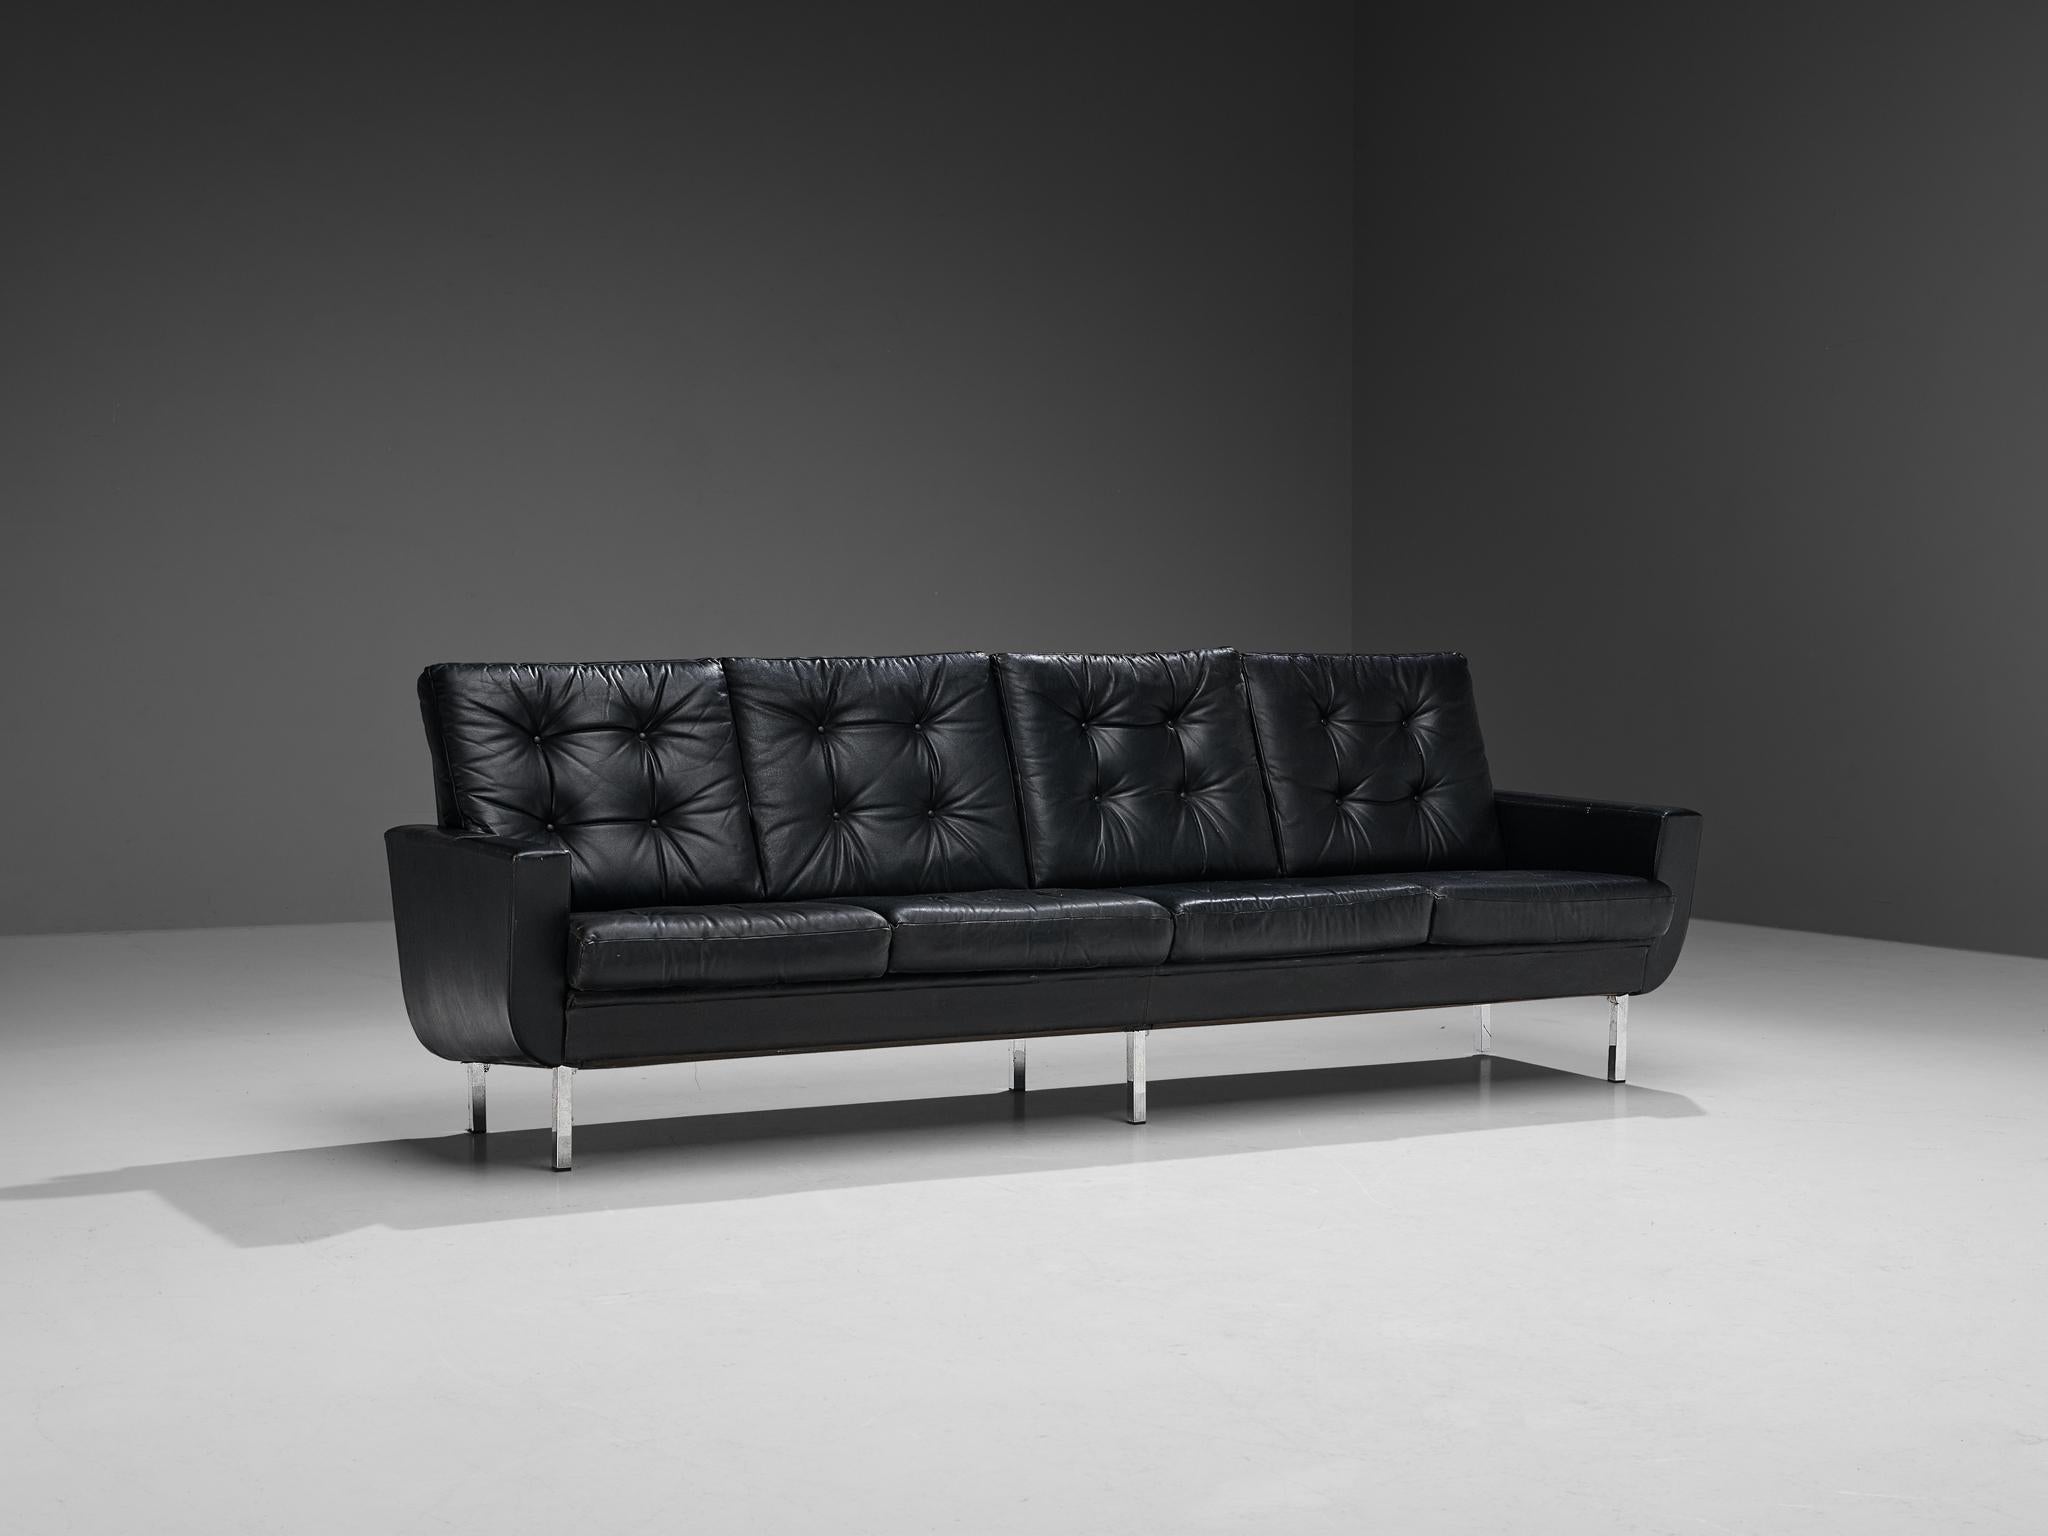 Viersitziges Sofa, Kunstleder, Stahl, Europa, 1960er Jahre. 

Ein großes Sofa, auf dem leicht vier oder mehr Personen Platz finden. Dieses Sofa ist schlicht und doch stilvoll in seinem Design. Durch die schwarze Gesamtfarbe des Kunstlederbezugs